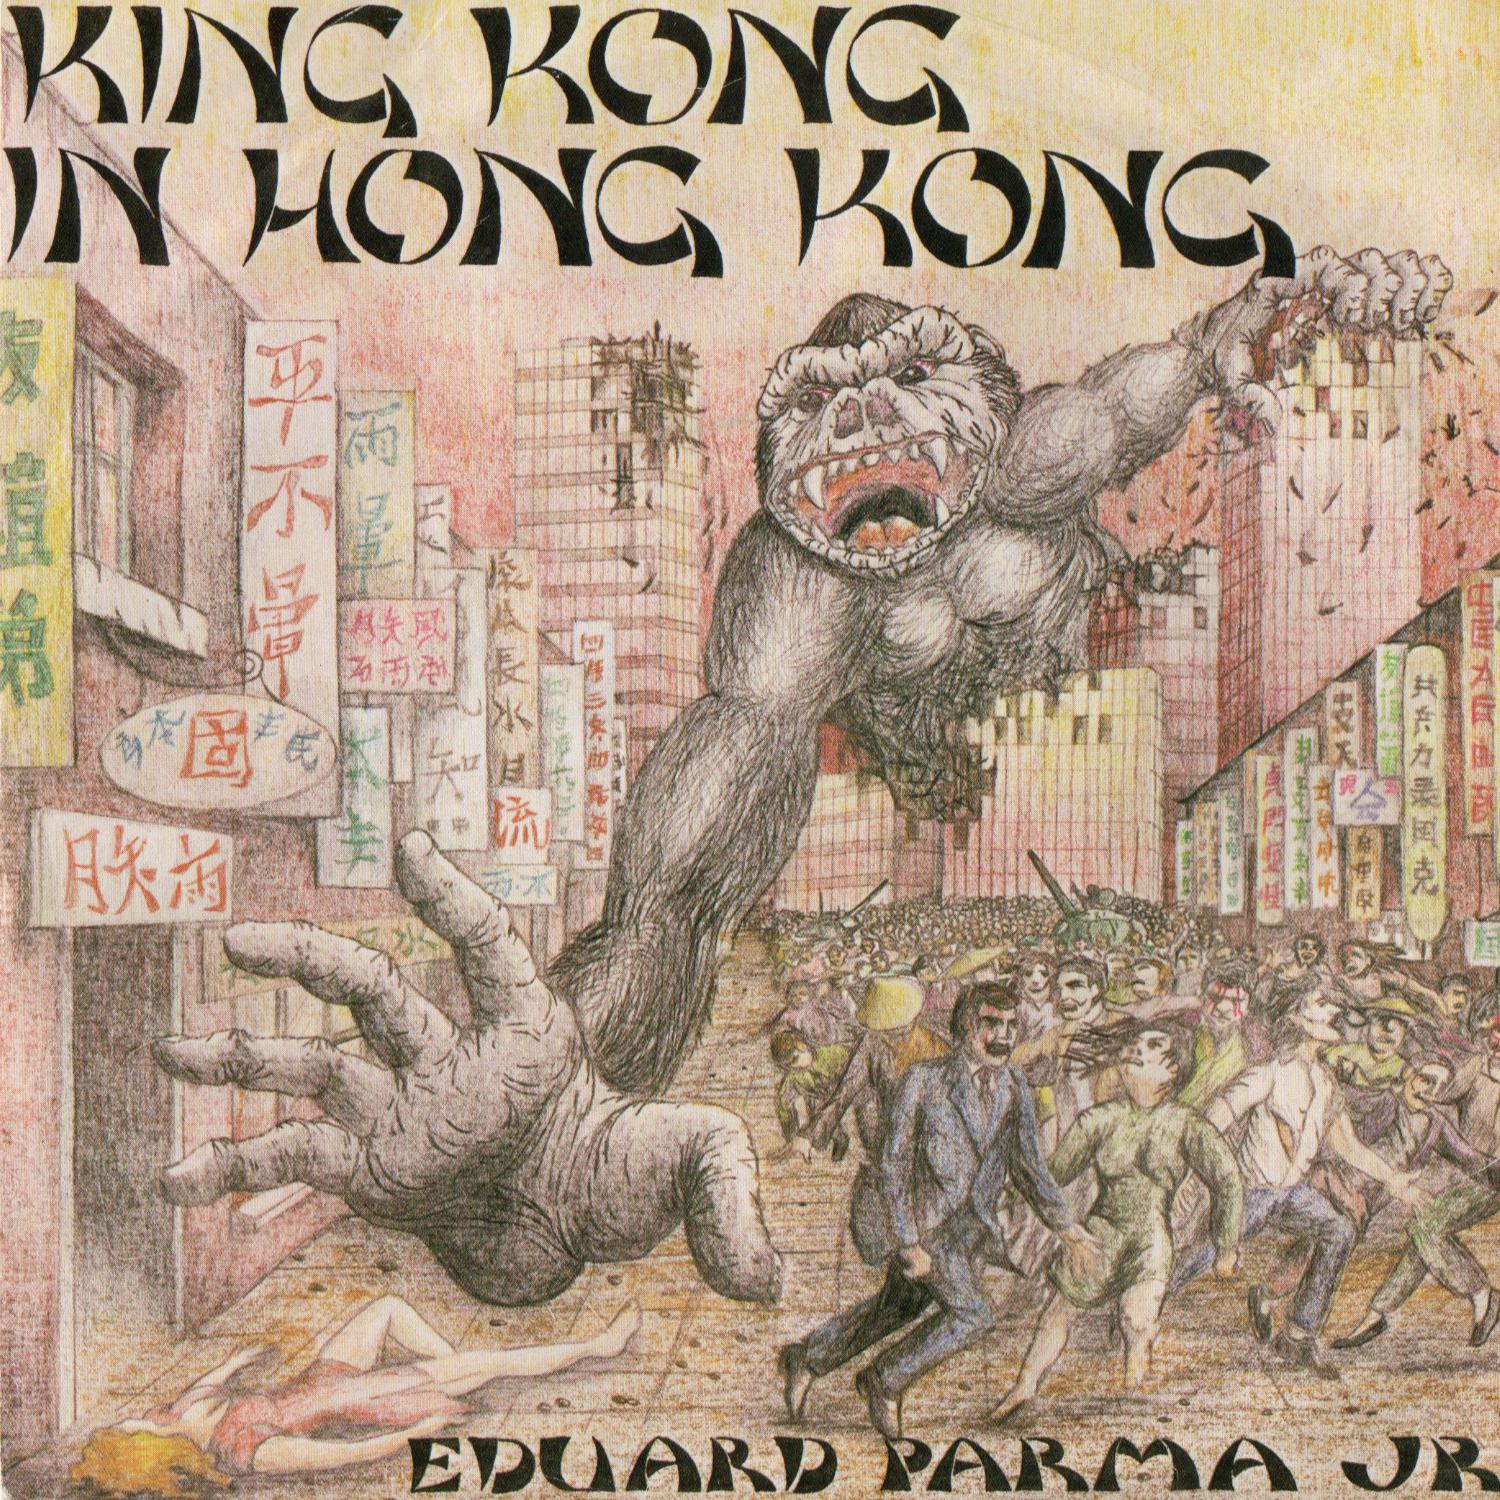 Eduard Parma - King Kong in Hong Kong, Pt. 1